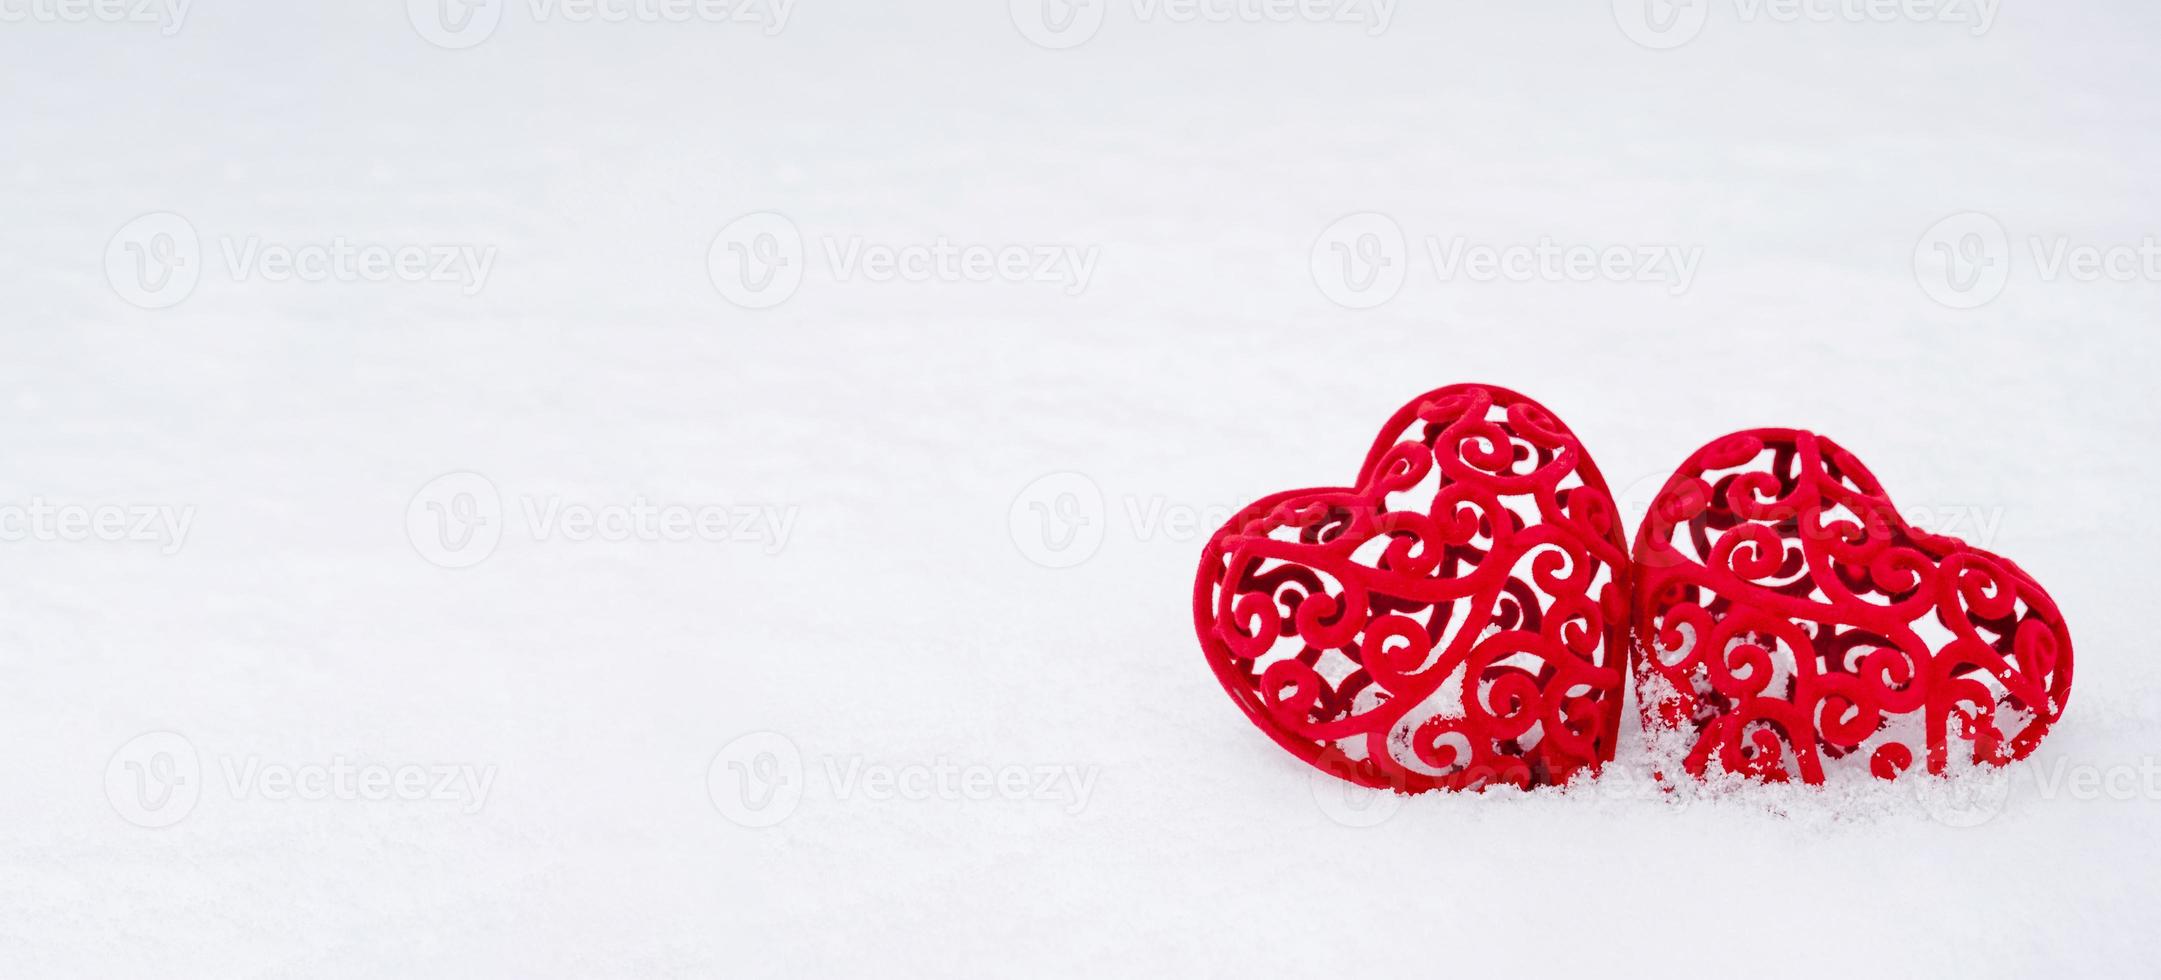 deux coeurs rouges dans la neige - une carte de voeux pour la saint valentin, la fête de tous les amoureux le 14 février. copiez l'espace. invitation à un rendez-vous, amour, rencontres photo